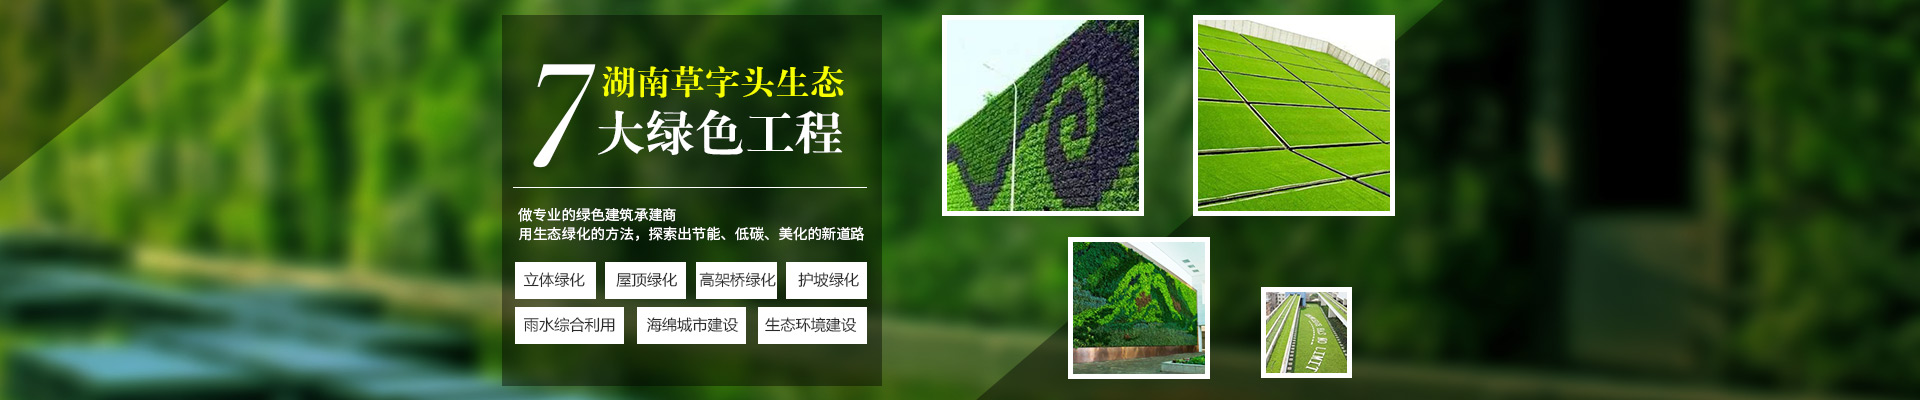 湖南草字头生态环境建设有限公司|专注于生态修复和绿化环保事业